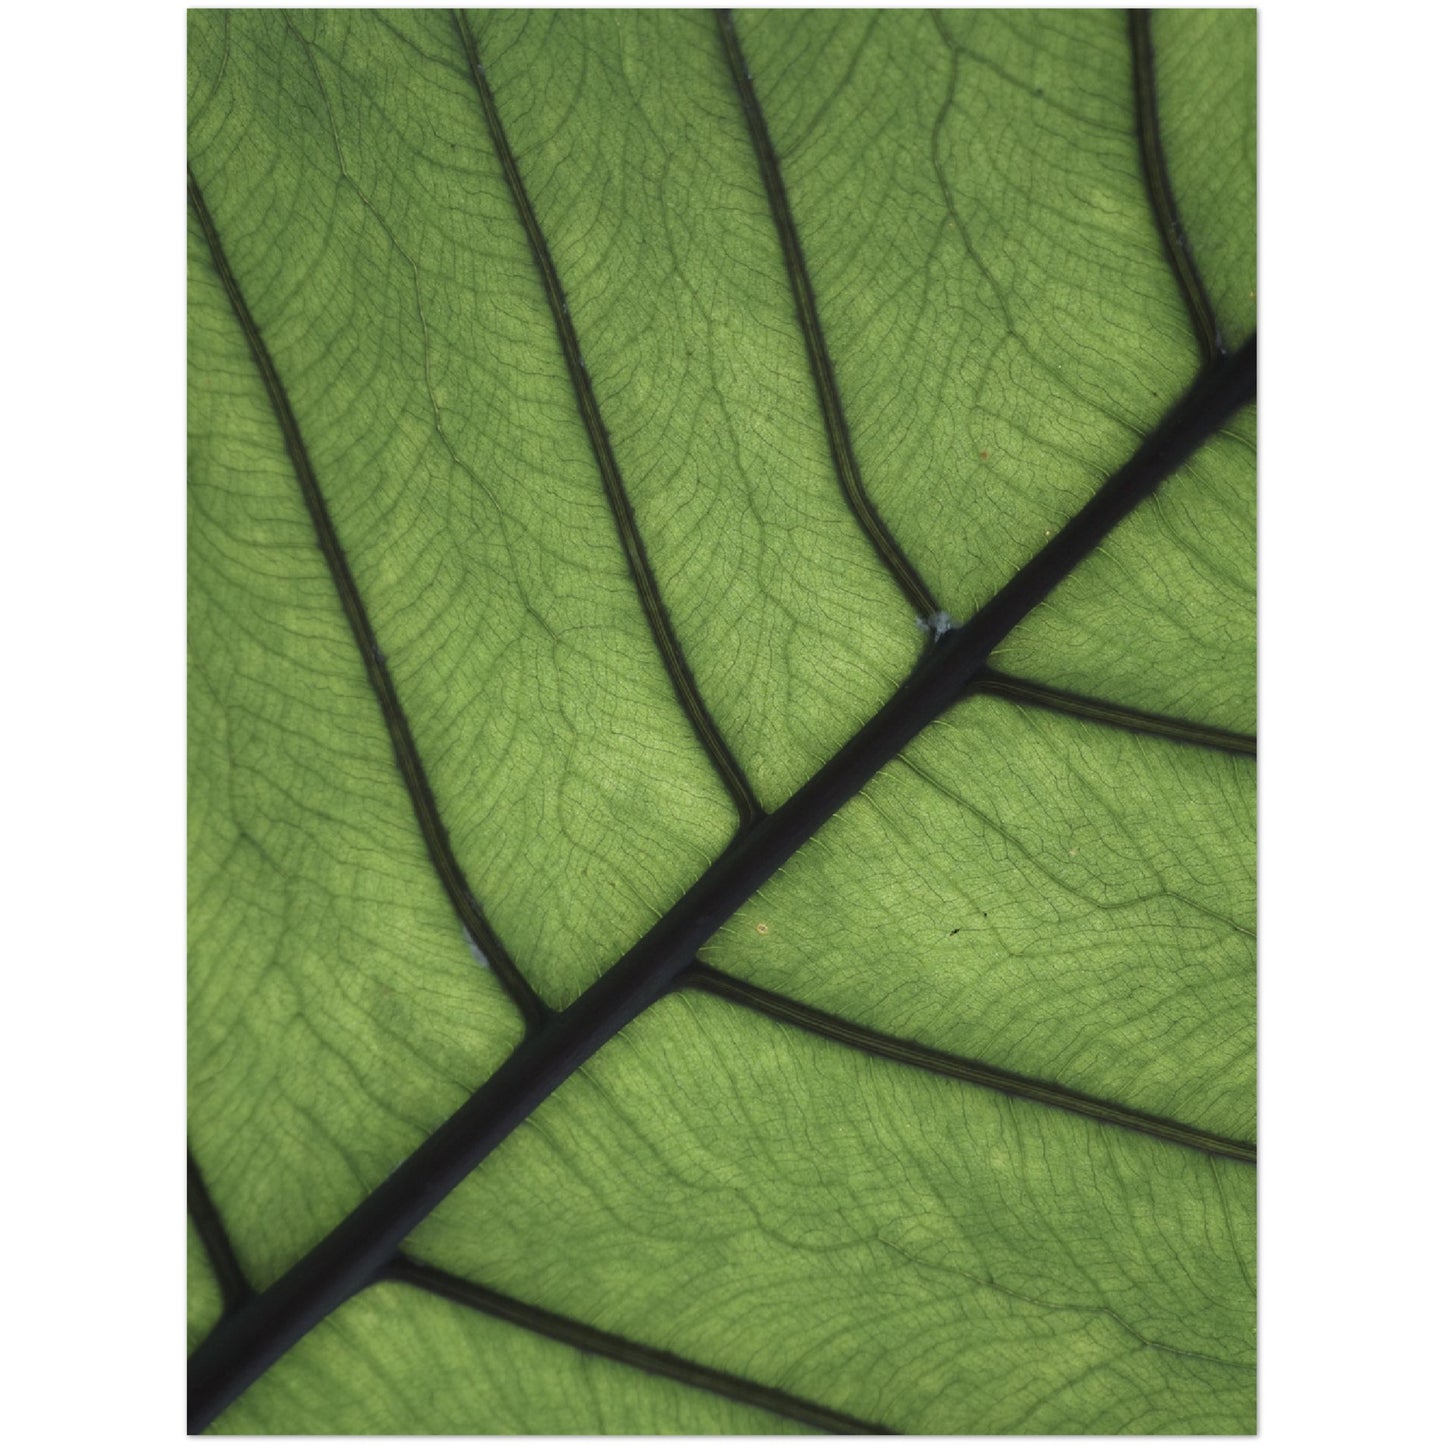 Leaf Texture Print